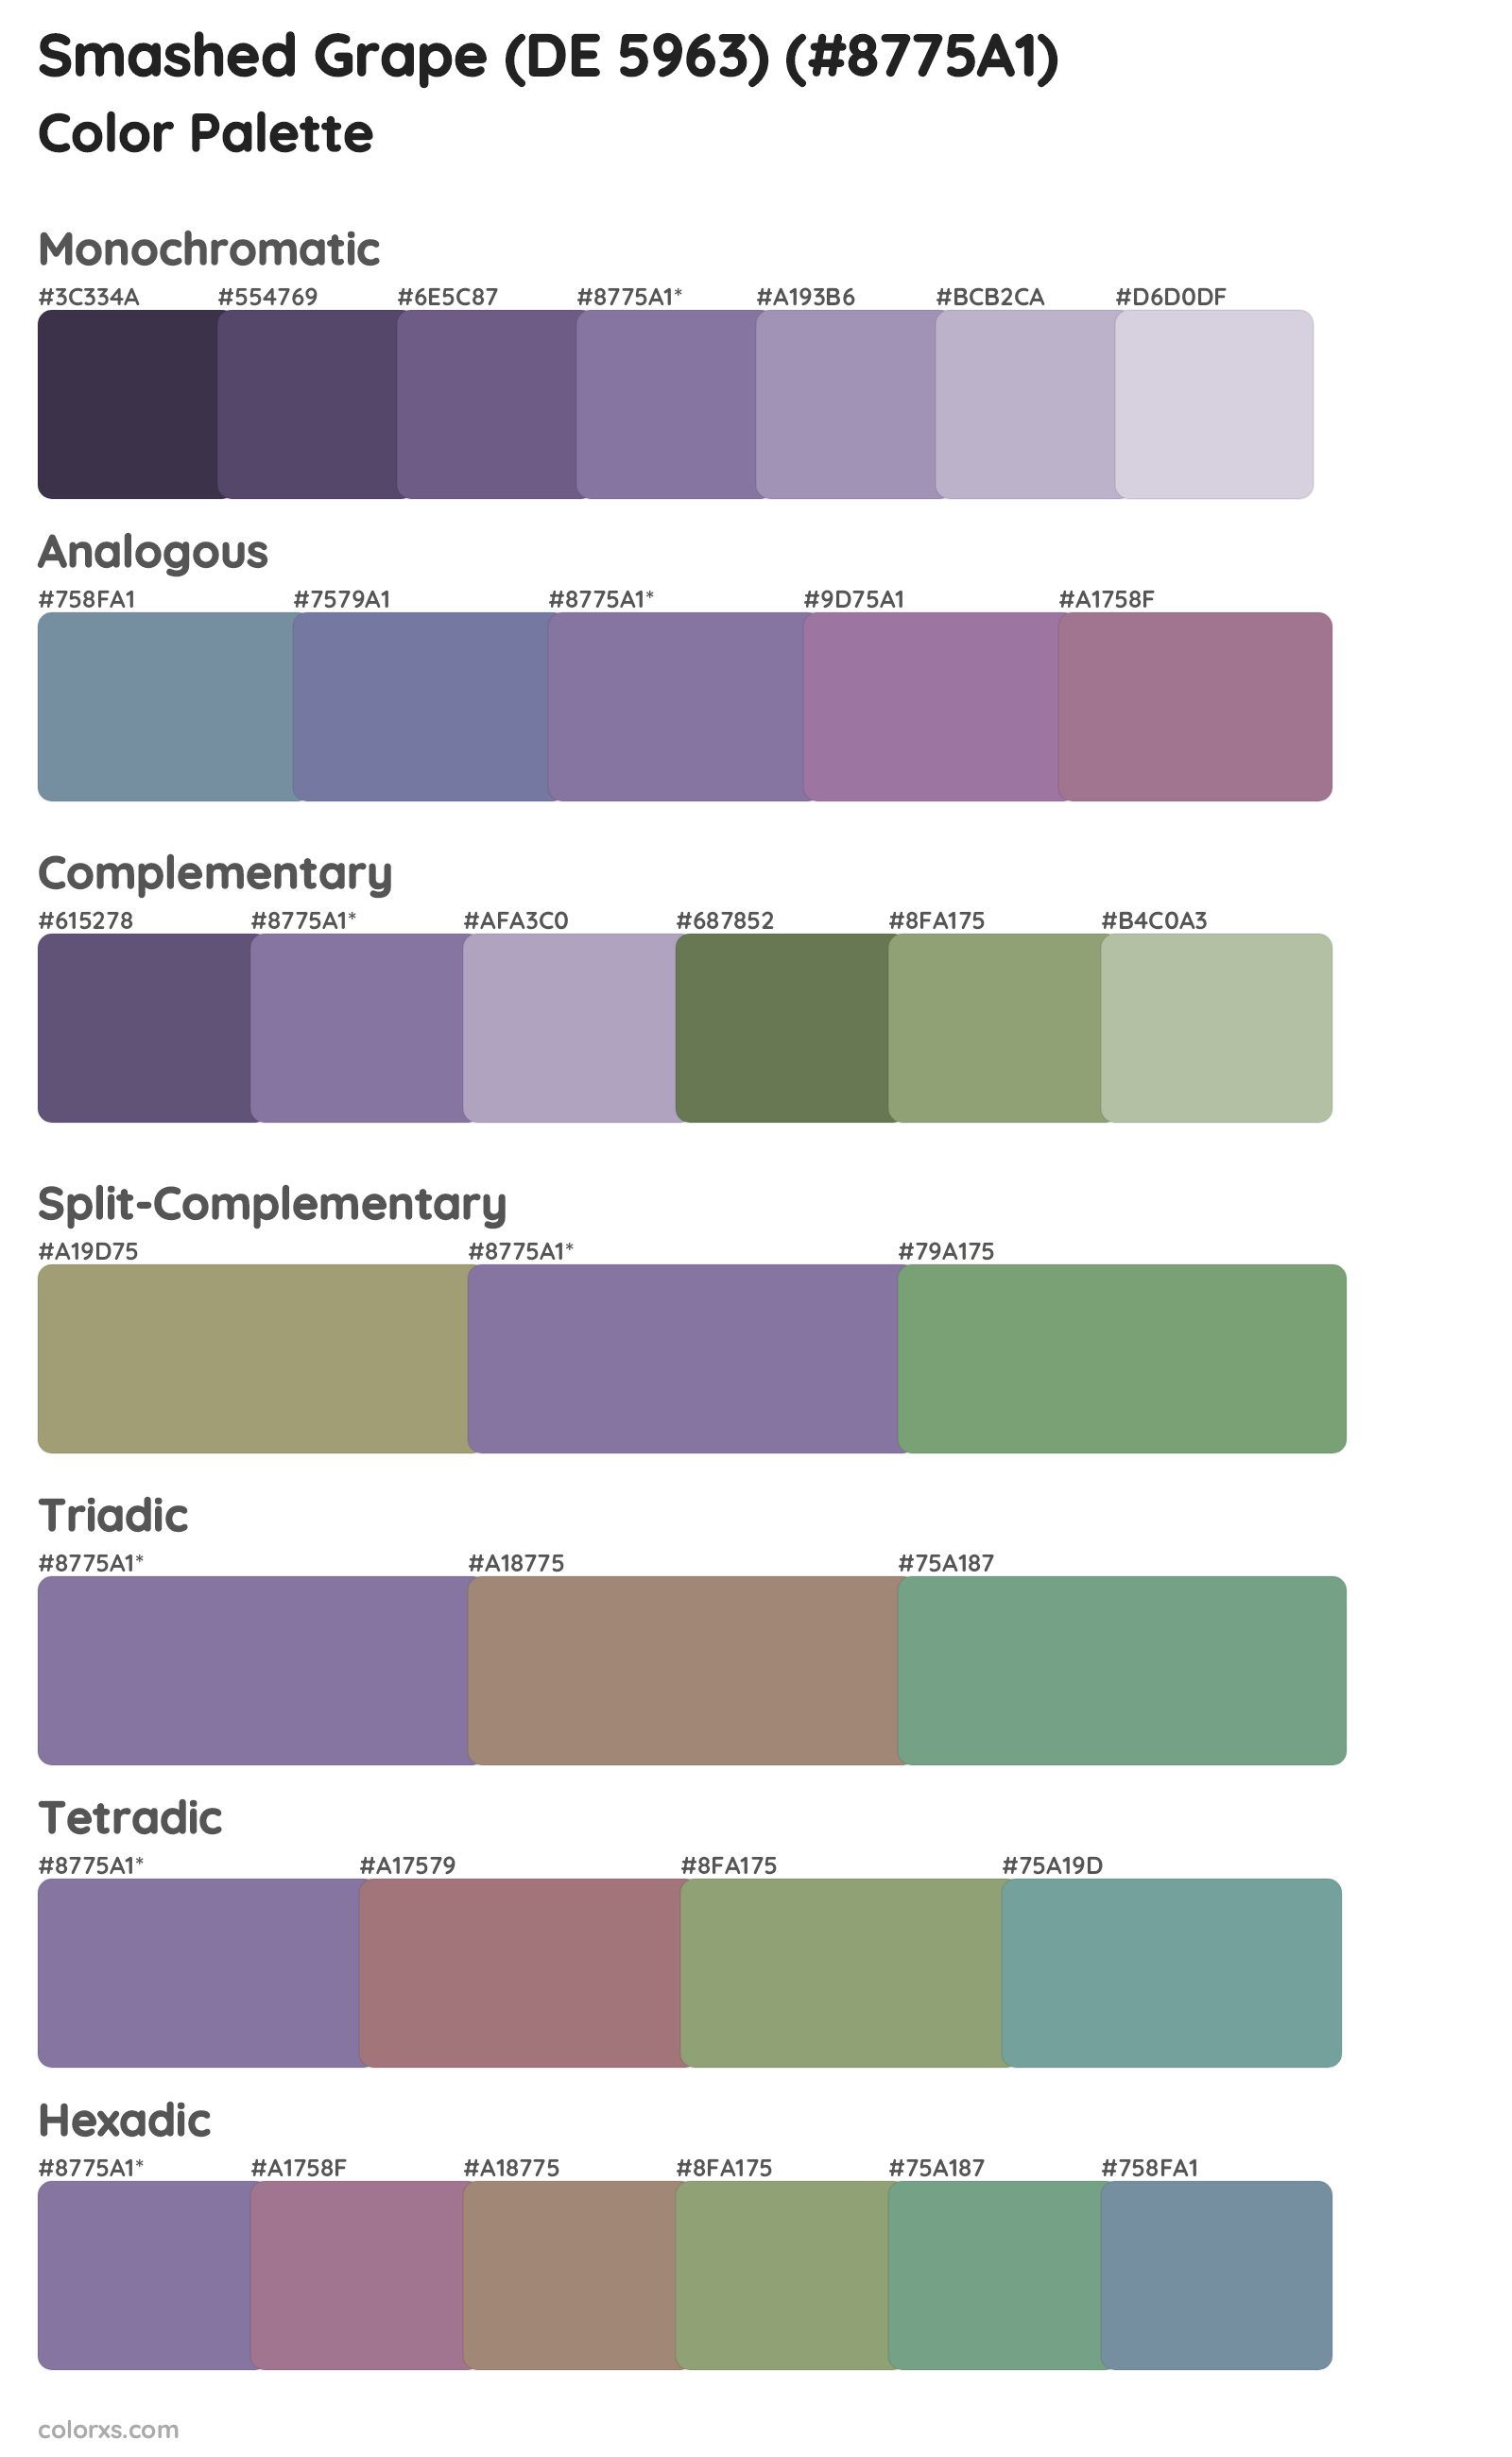 Smashed Grape (DE 5963) Color Scheme Palettes